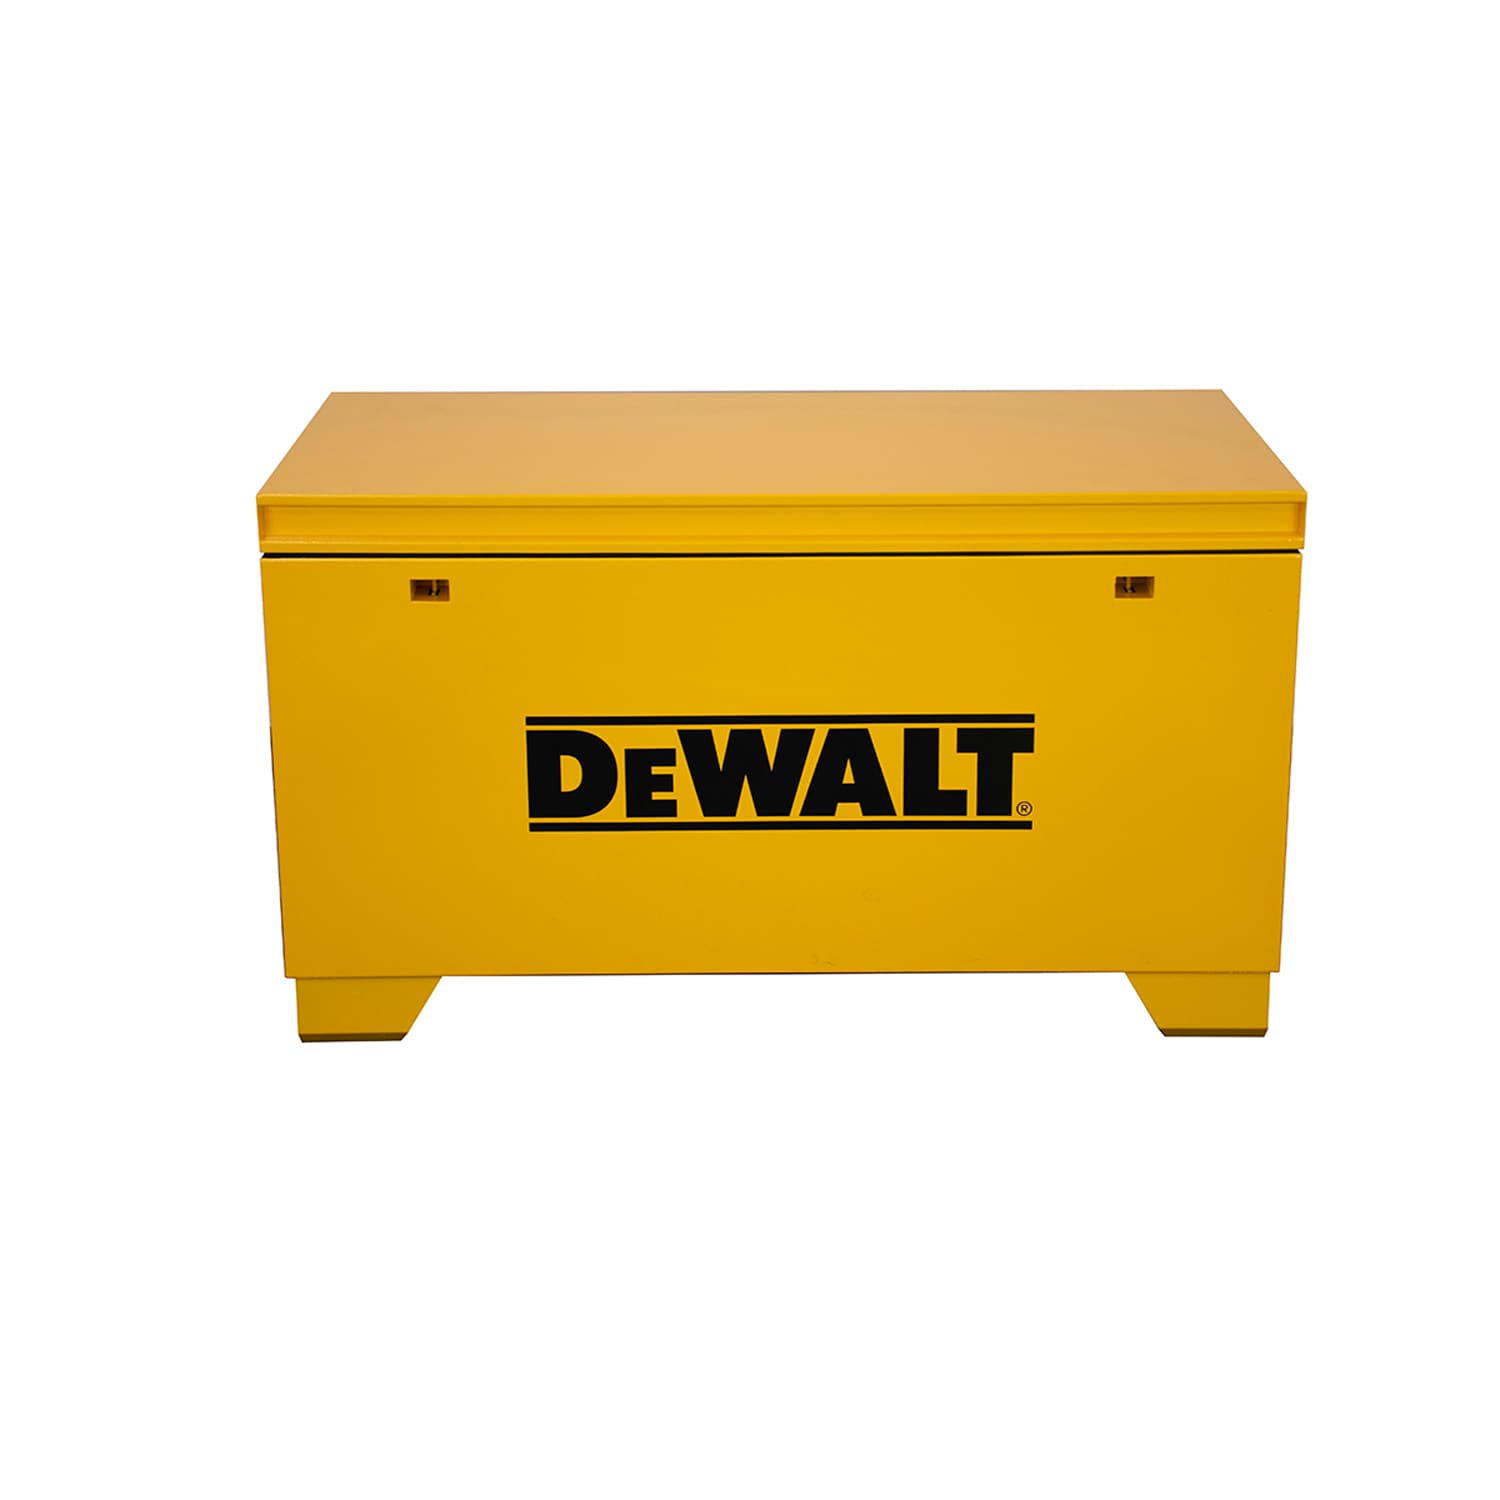 DEWALT TSTAK II Flat Top Toolbox, 66 Lb. Capacity - Valu Home Centers